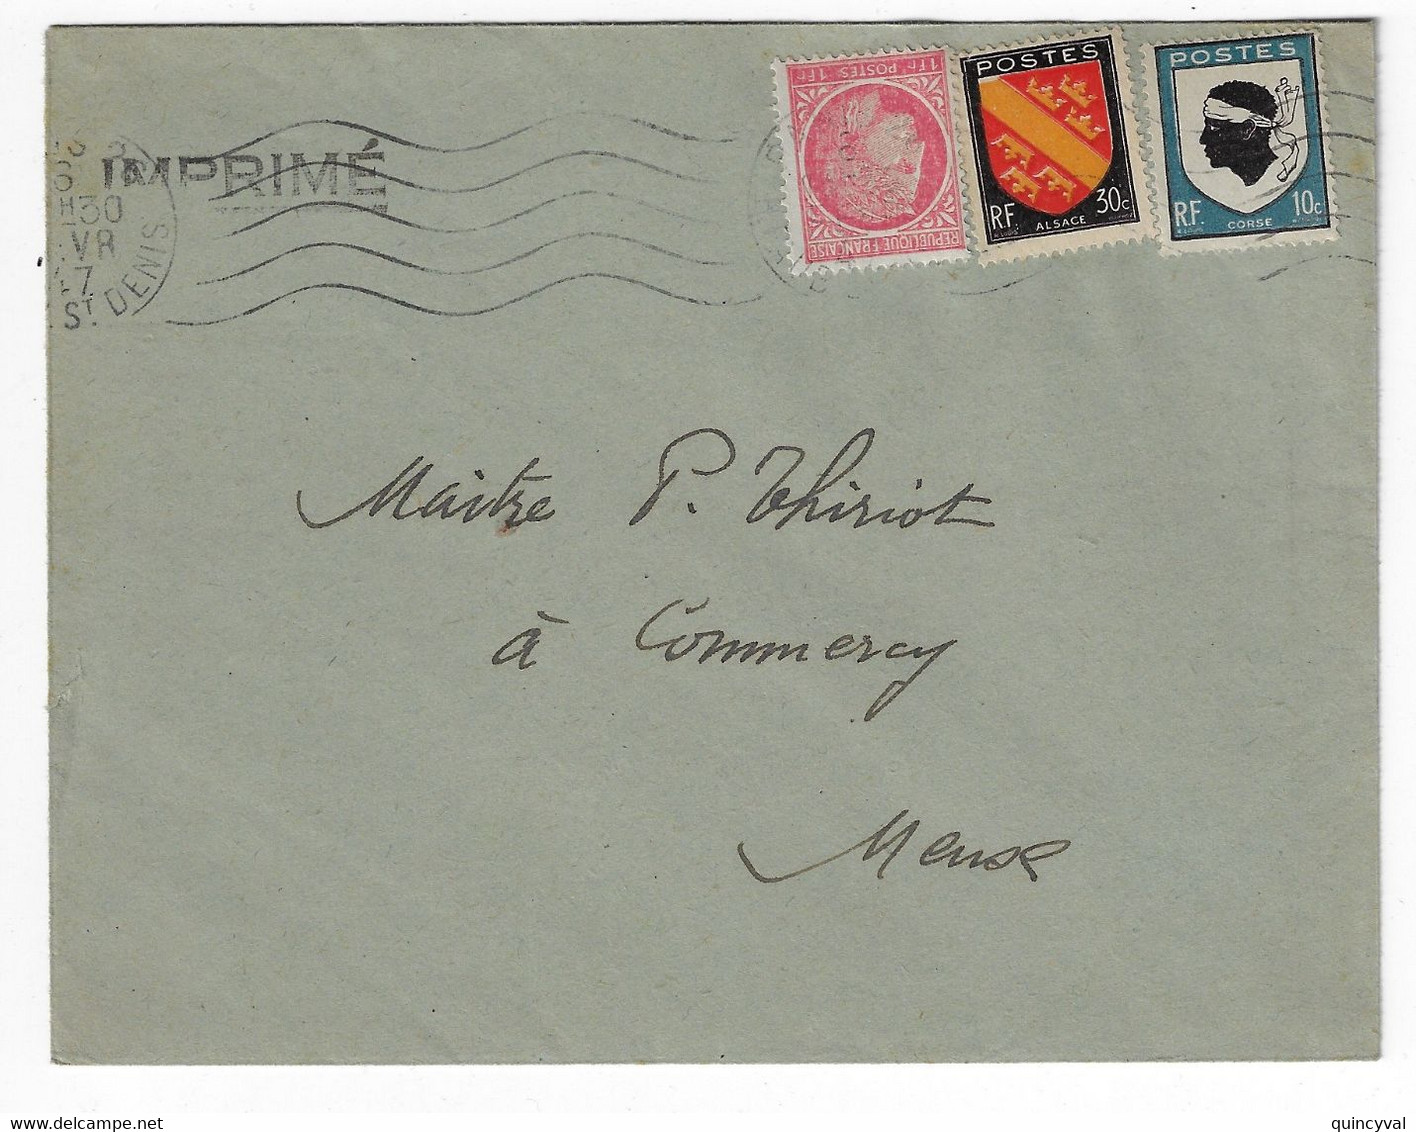 PARIS 26 Imprimé 1F Mazelin 30c Alsace 10c Corse Yv 676 756 755 Ob 1947 - Lettres & Documents